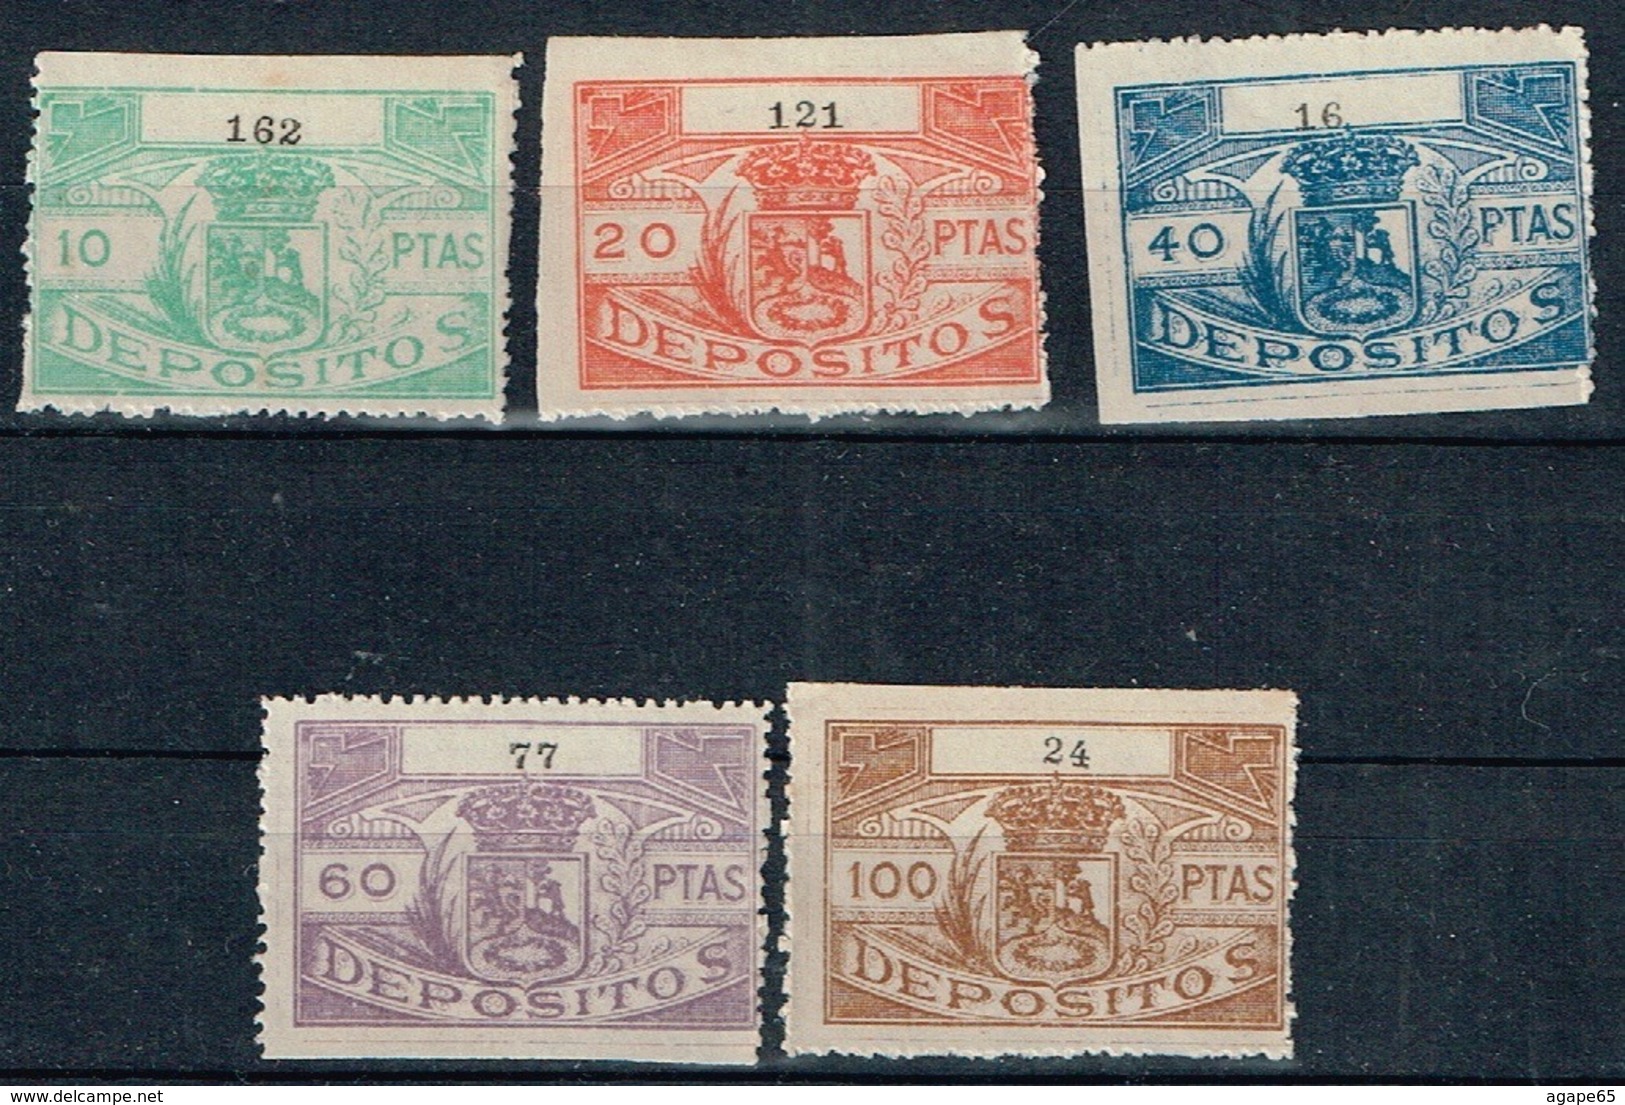 Ayuntamiento De Madrid, Depósitos, Spain Revenue Lot - Revenue Stamps